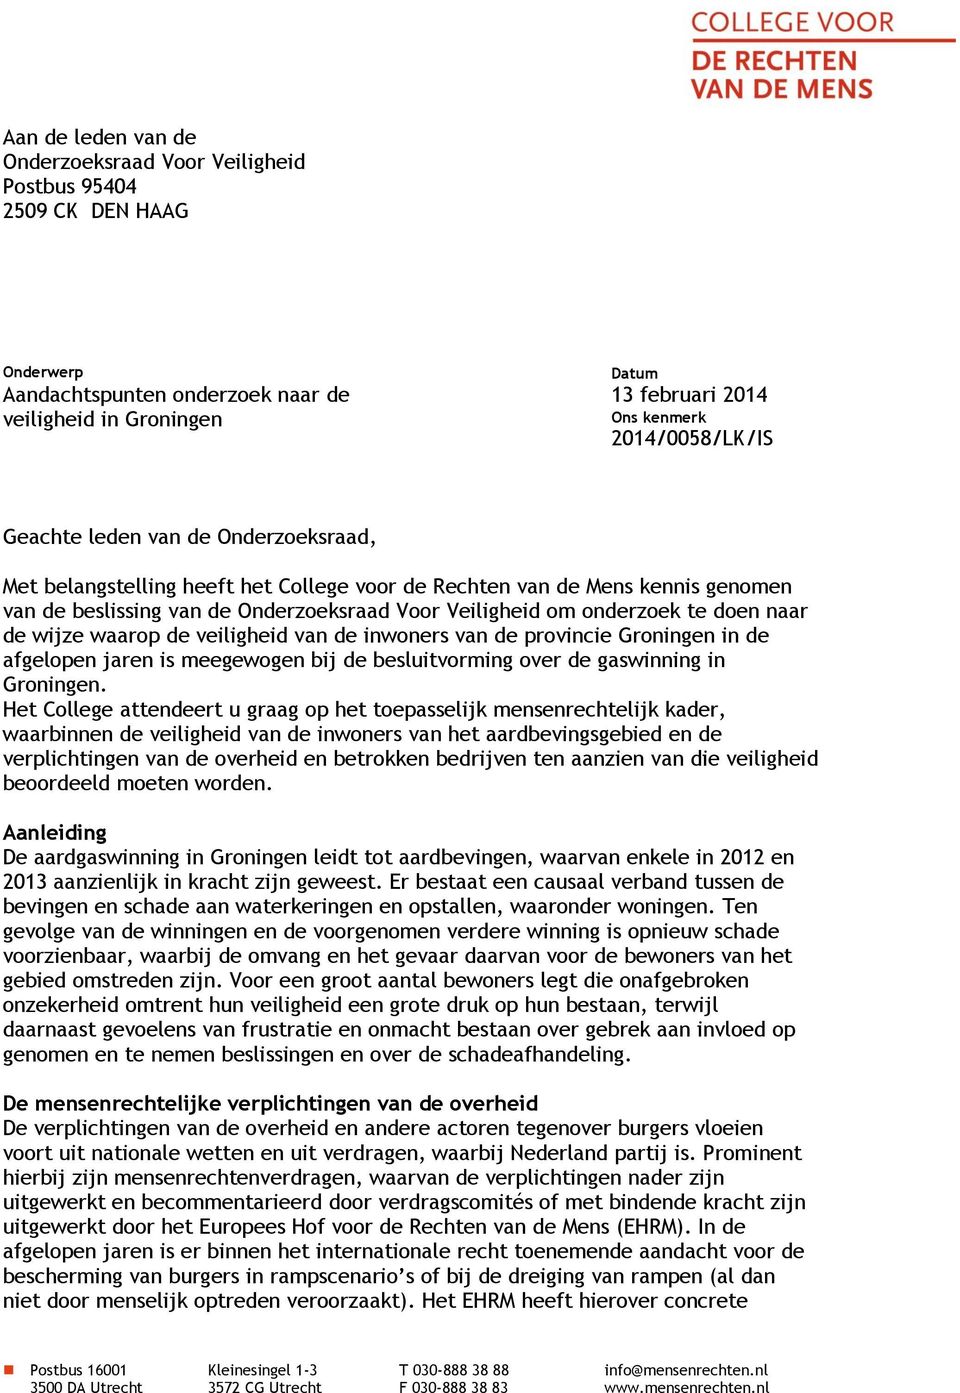 onderzoek te doen naar de wijze waarop de veiligheid van de inwoners van de provincie Groningen in de afgelopen jaren is meegewogen bij de besluitvorming over de gaswinning in Groningen.